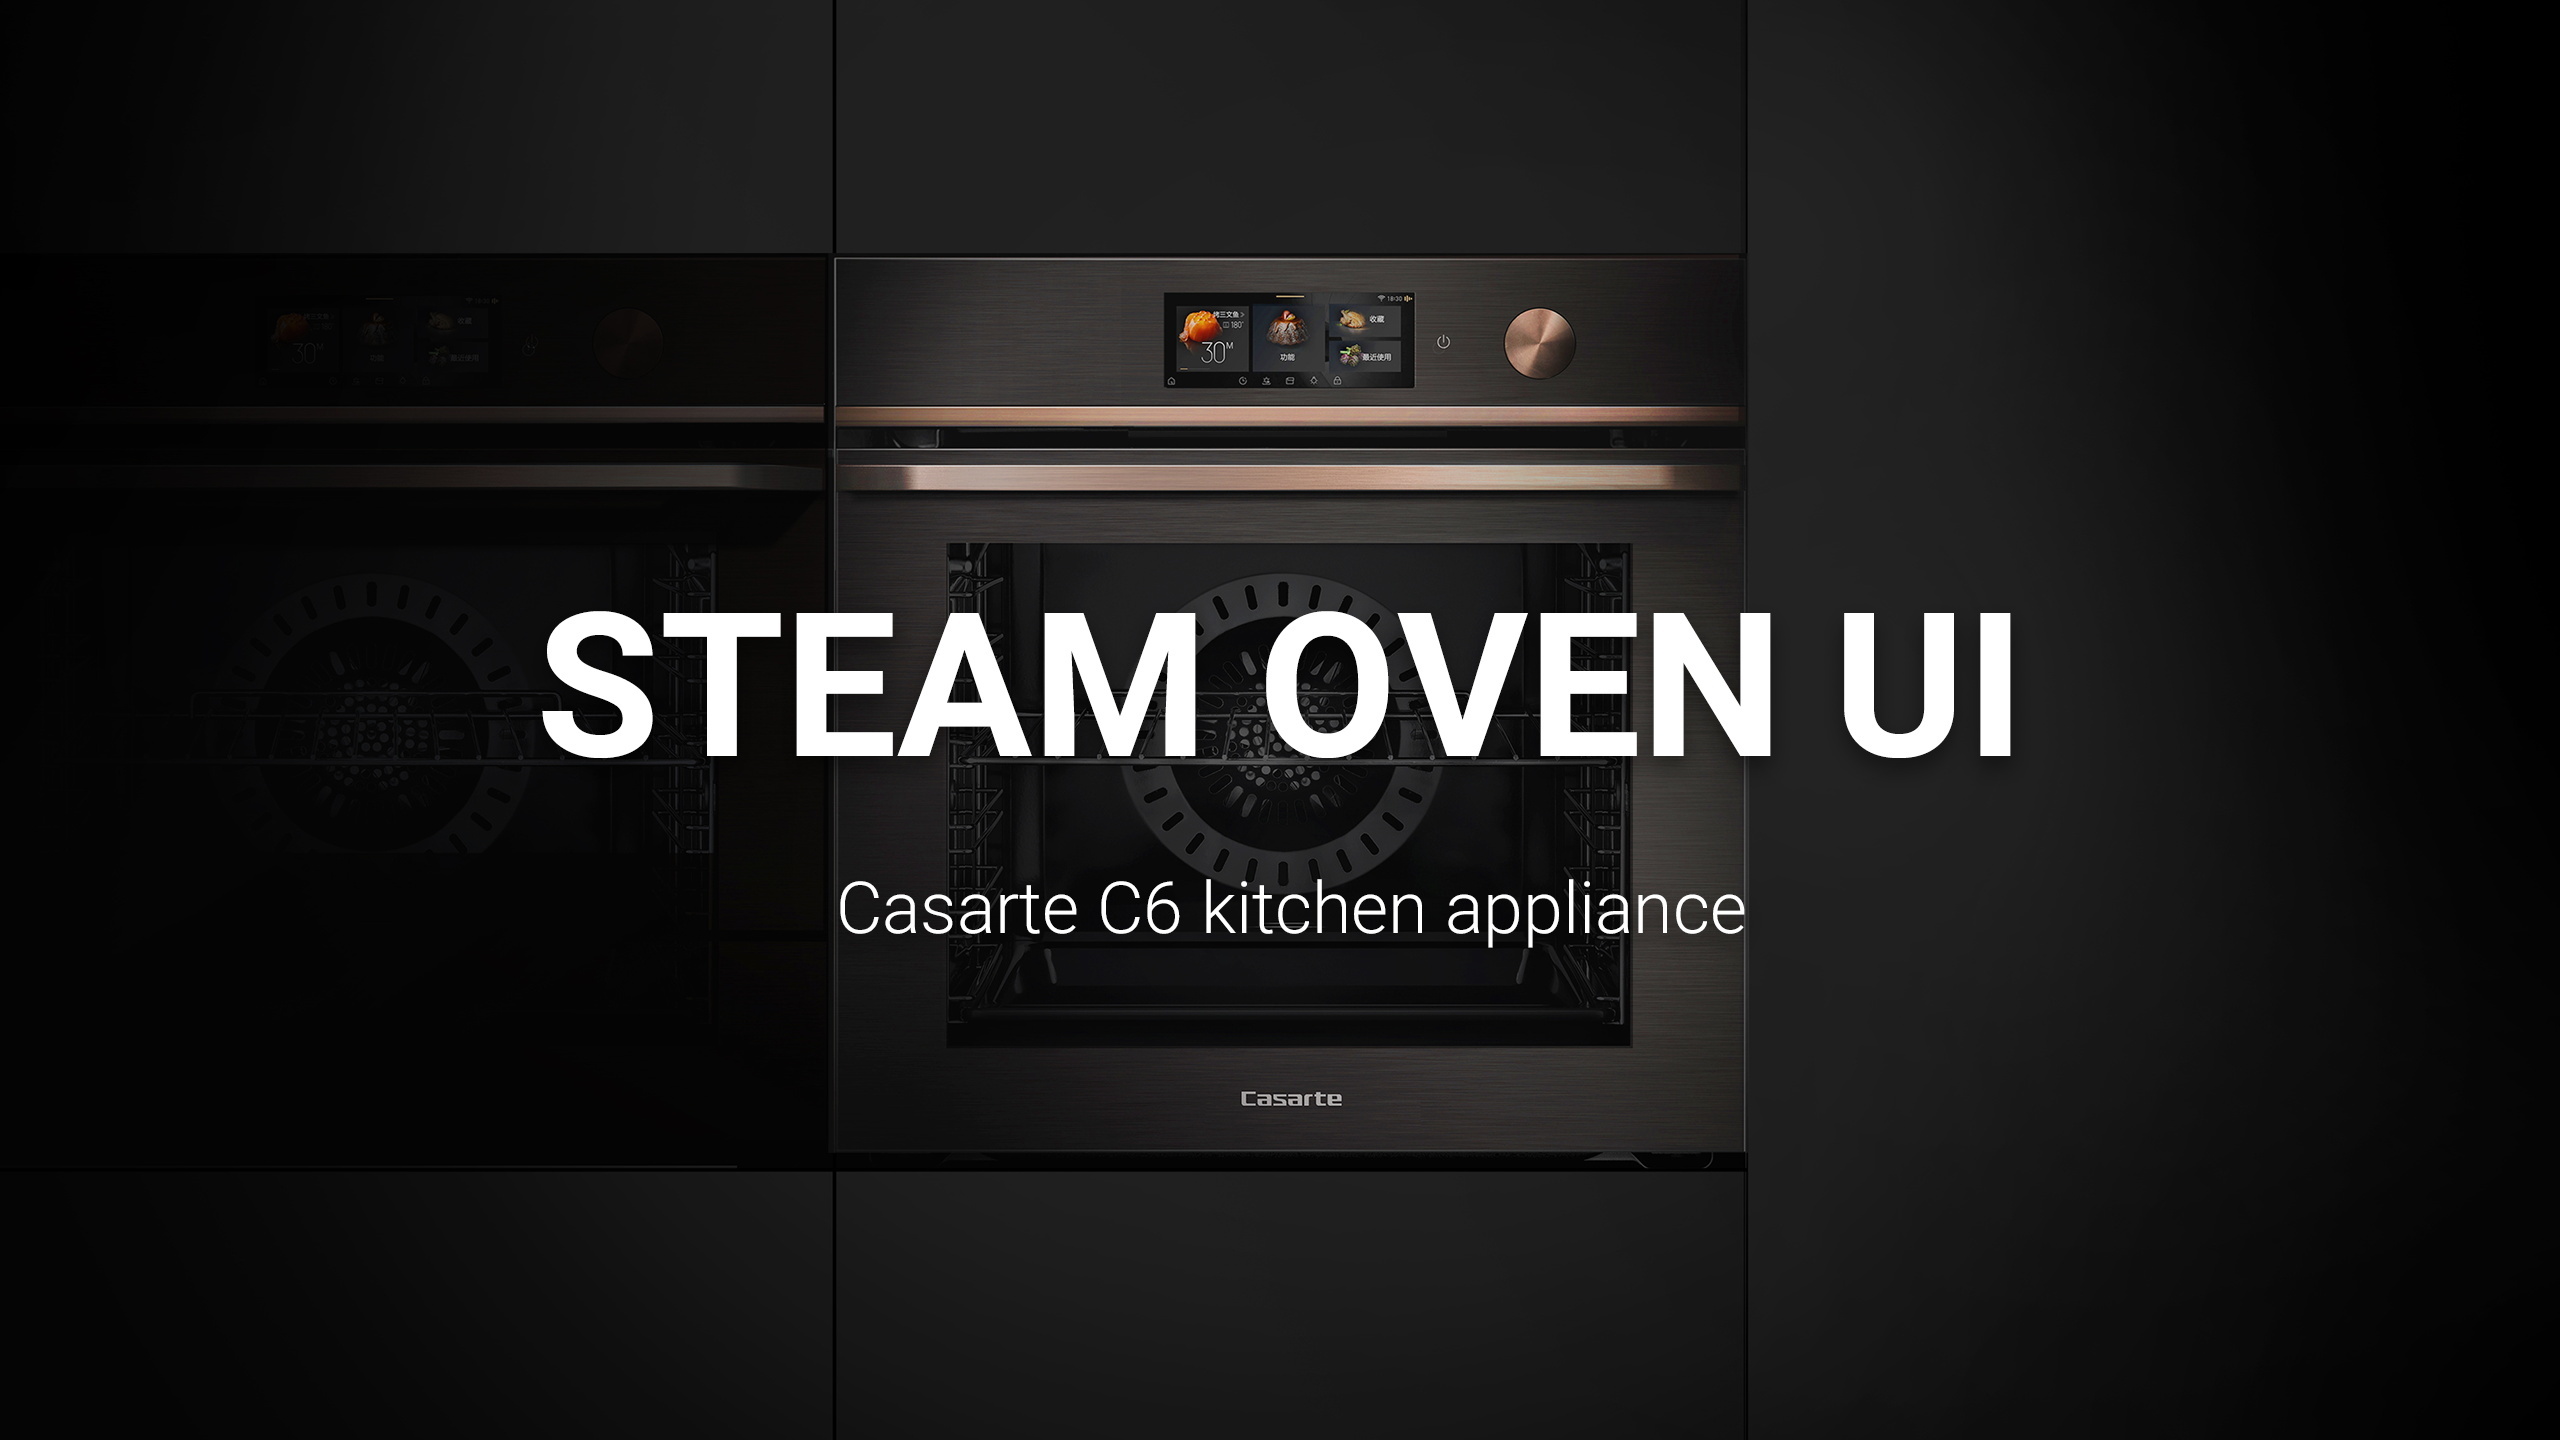 Casarte C6 kitchen appliance steam oven UI